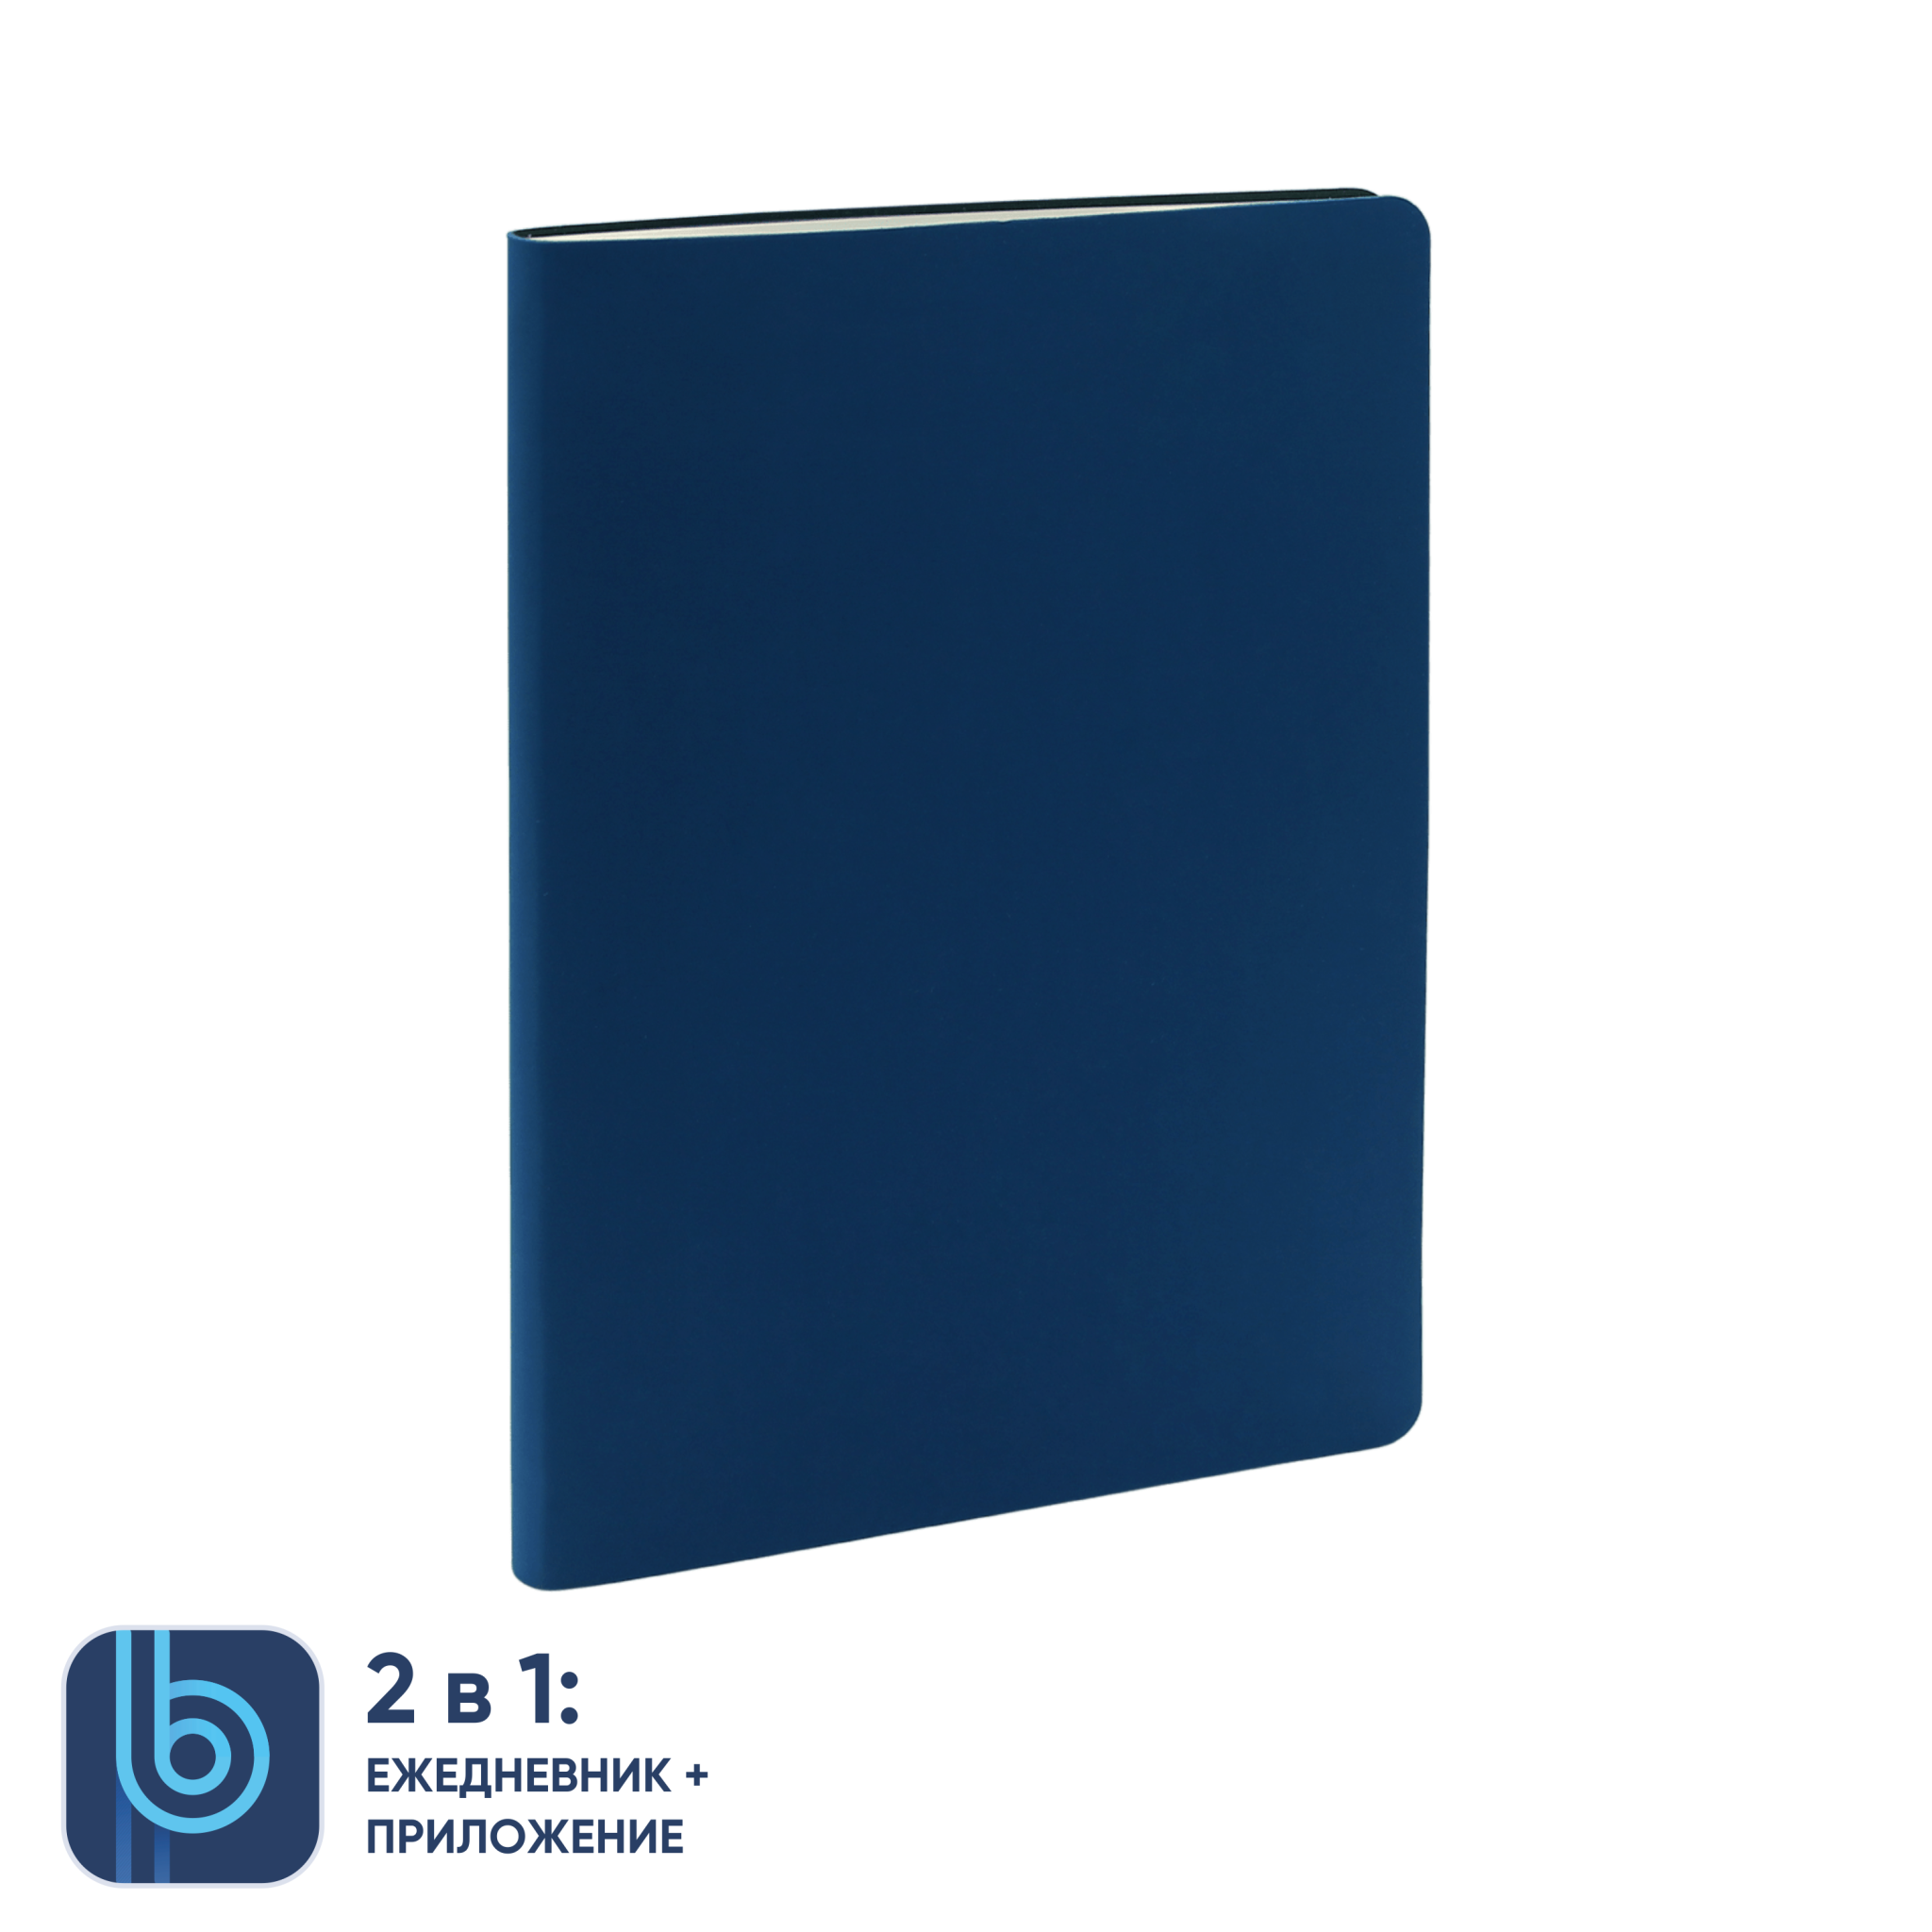 Ежедневник Bplanner.01 blue (синий), синий, картон